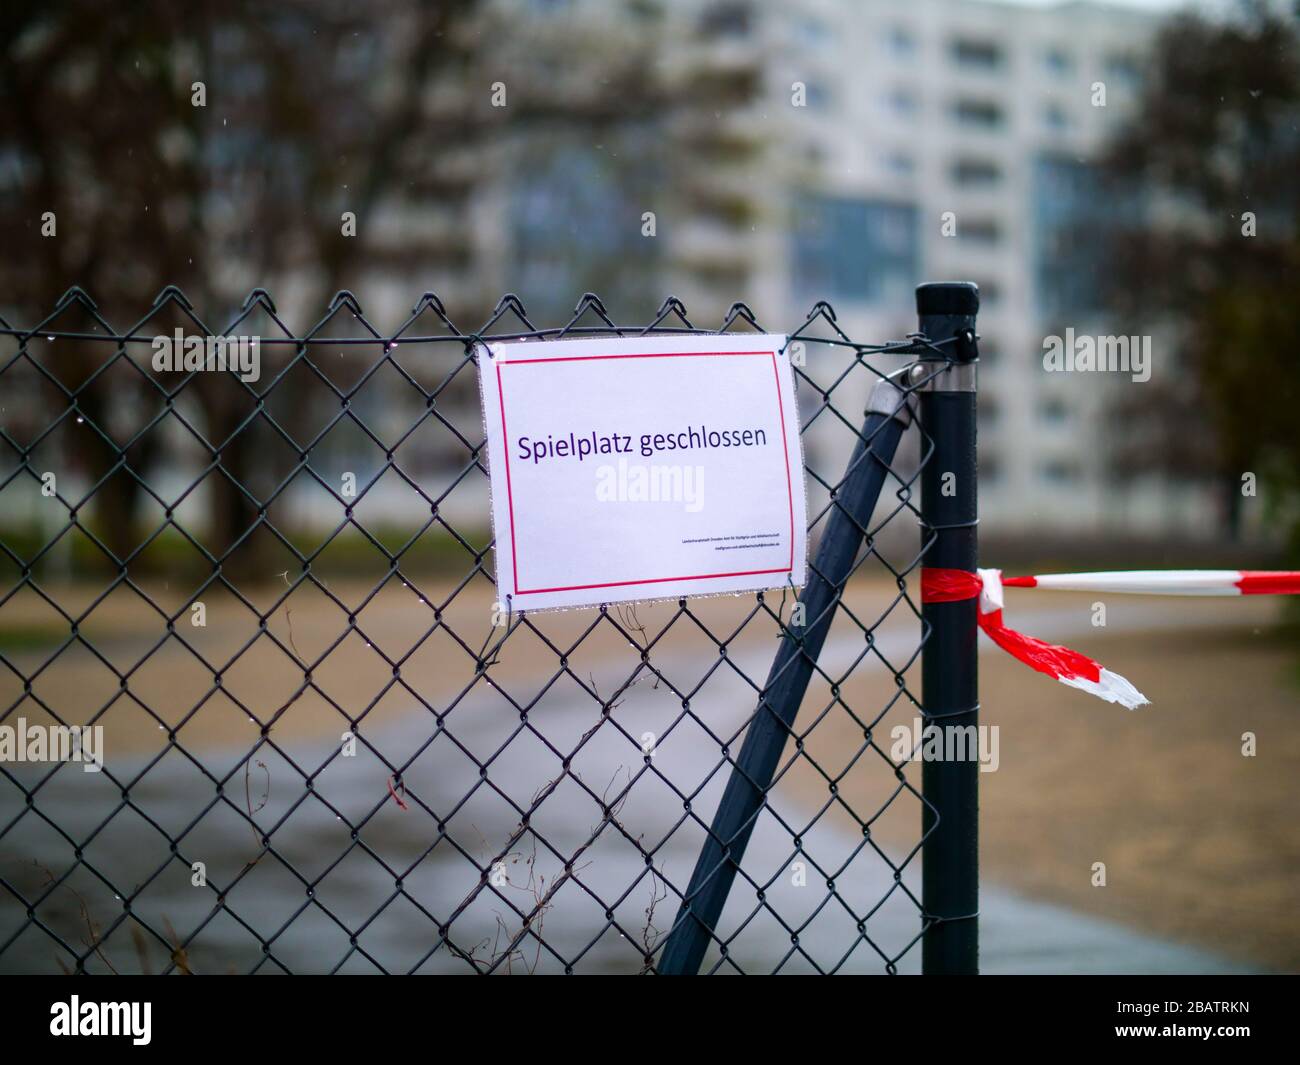 Spielplatz geschlossen wegen Coronavirus Lockdown Ausgangssperre Foto de stock